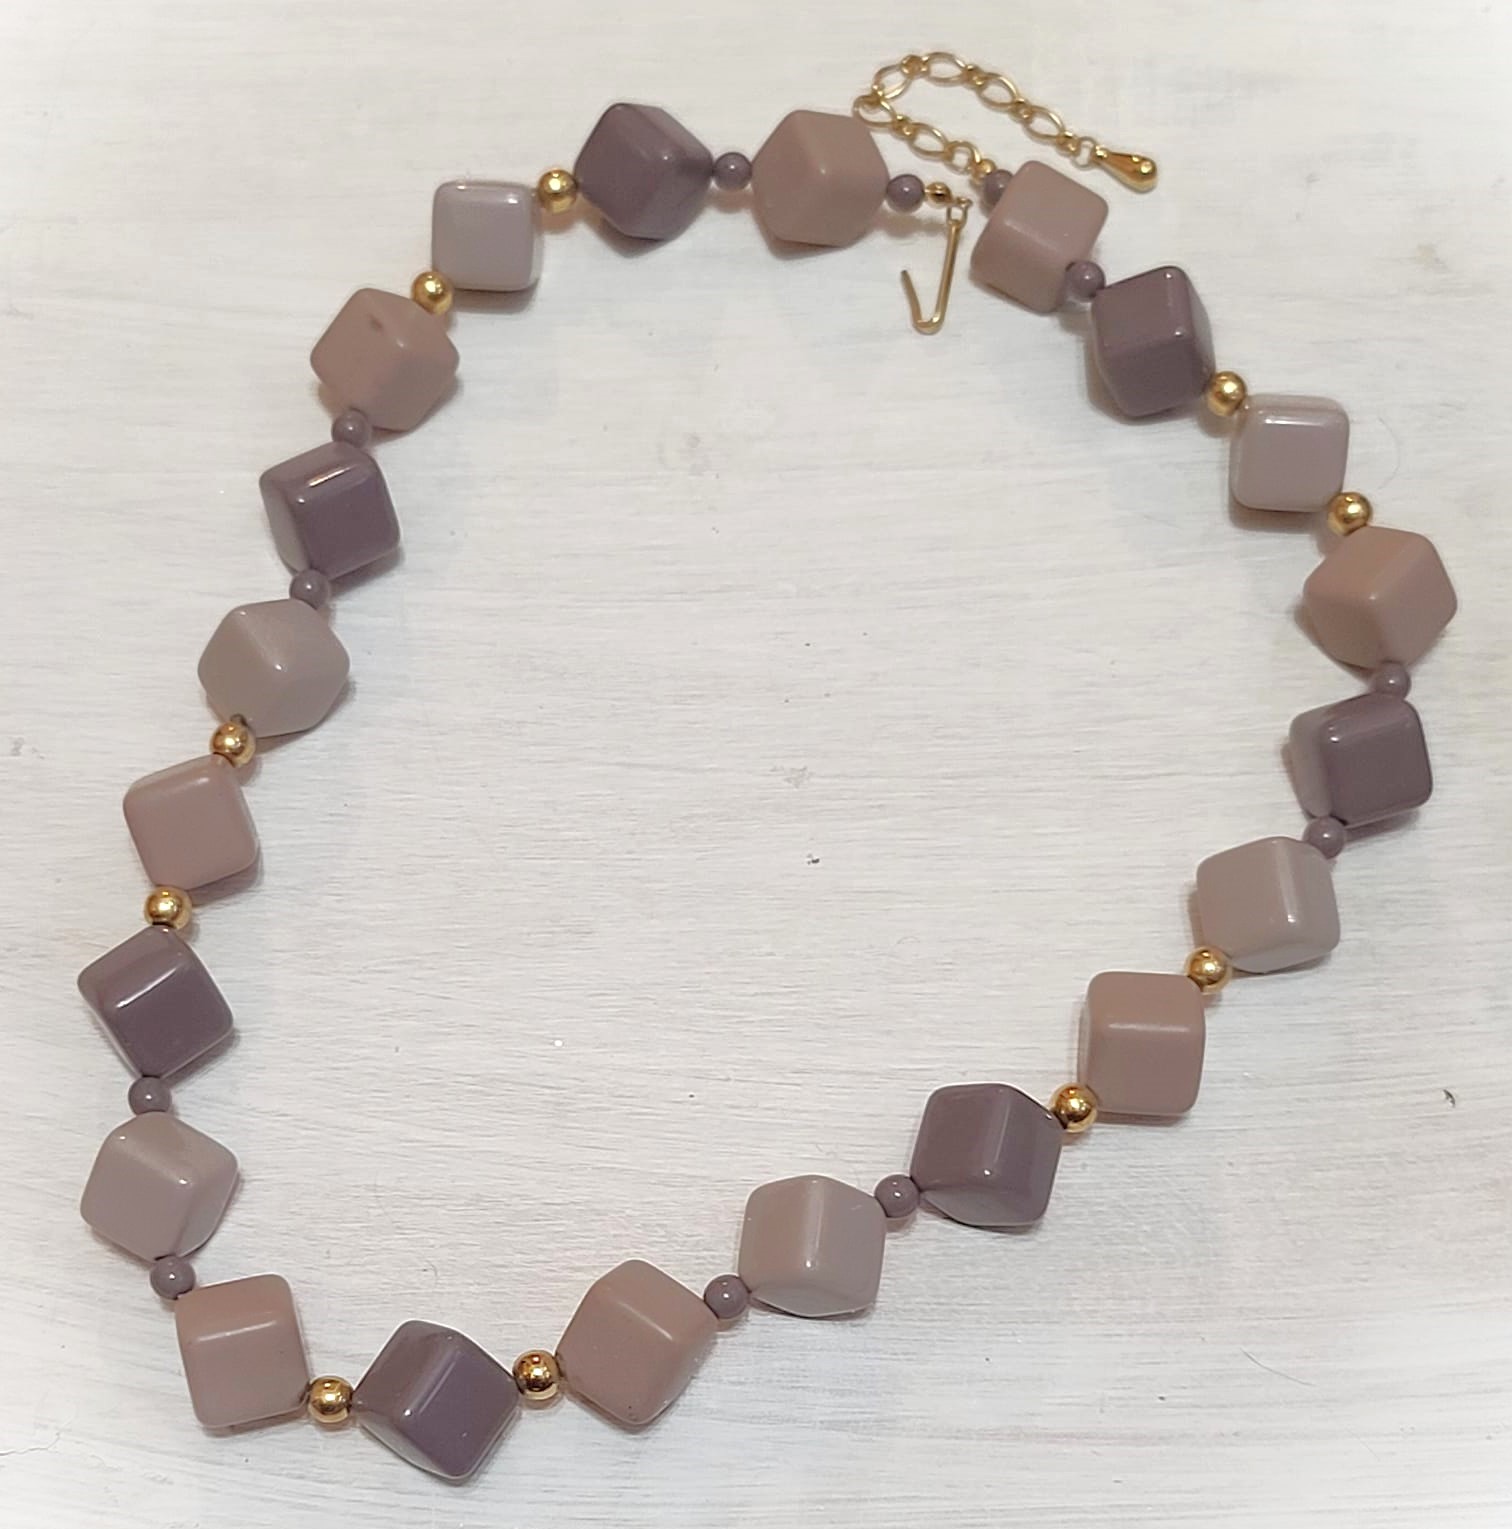 Mauve purple/gray cube beads necklace vintage